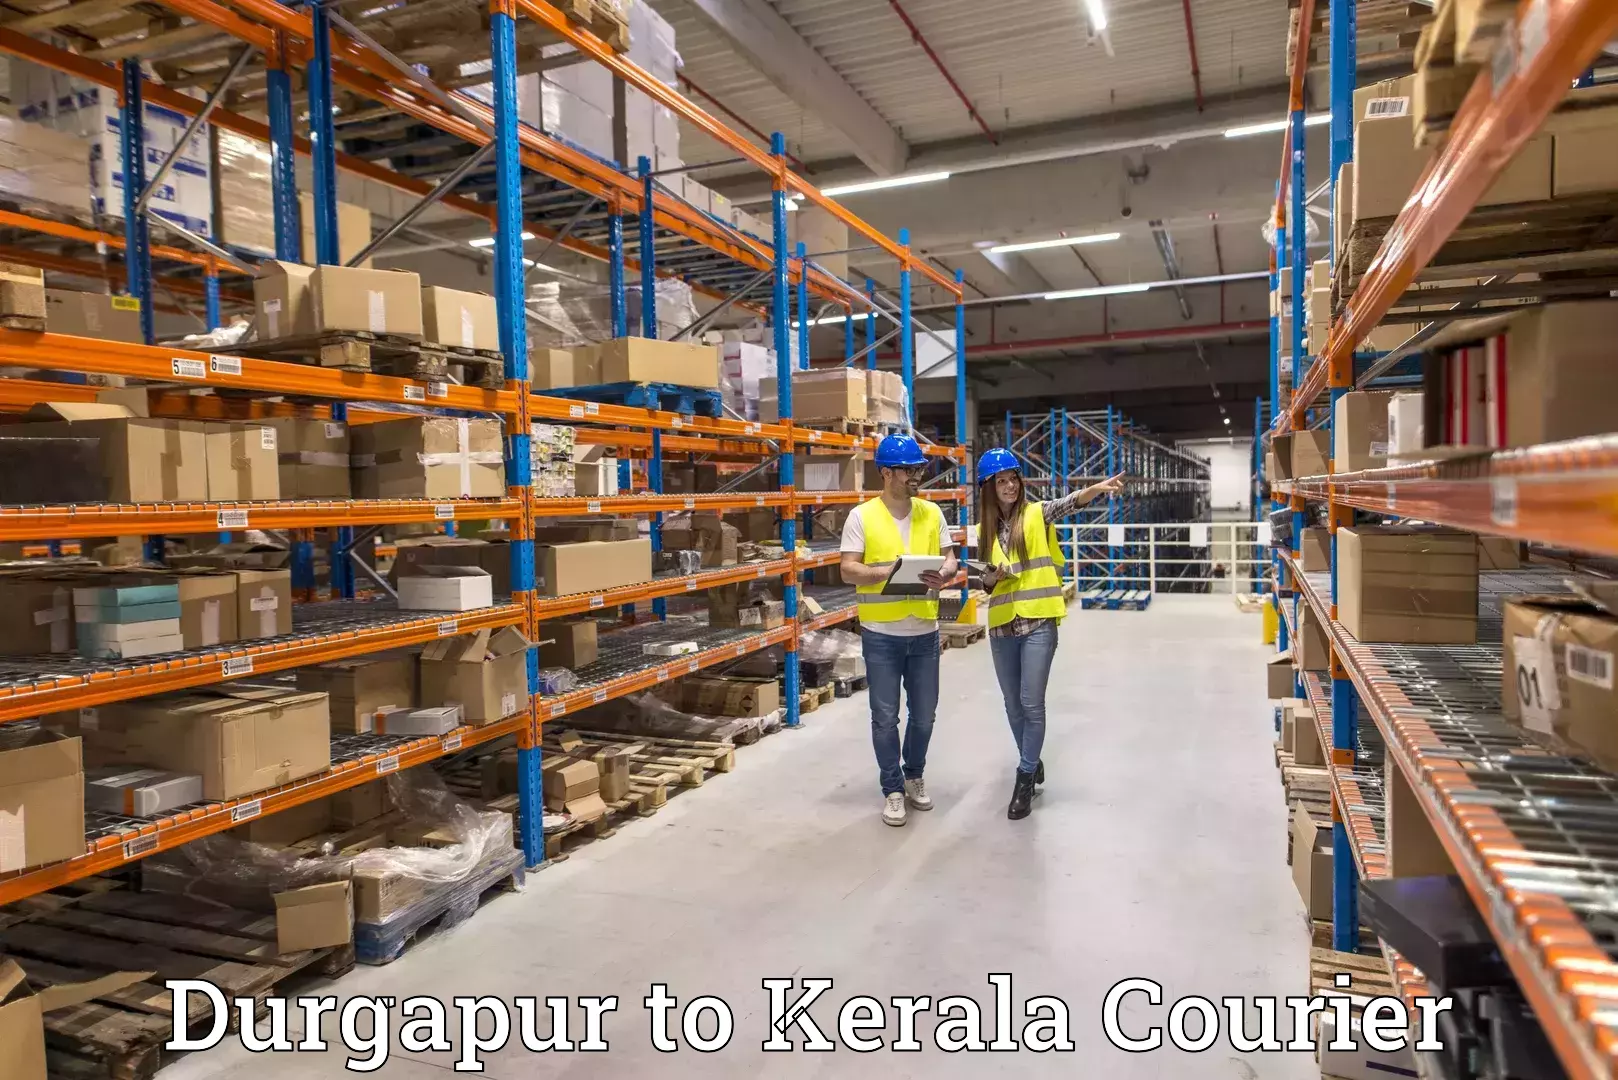 Local delivery service Durgapur to Koyilandy